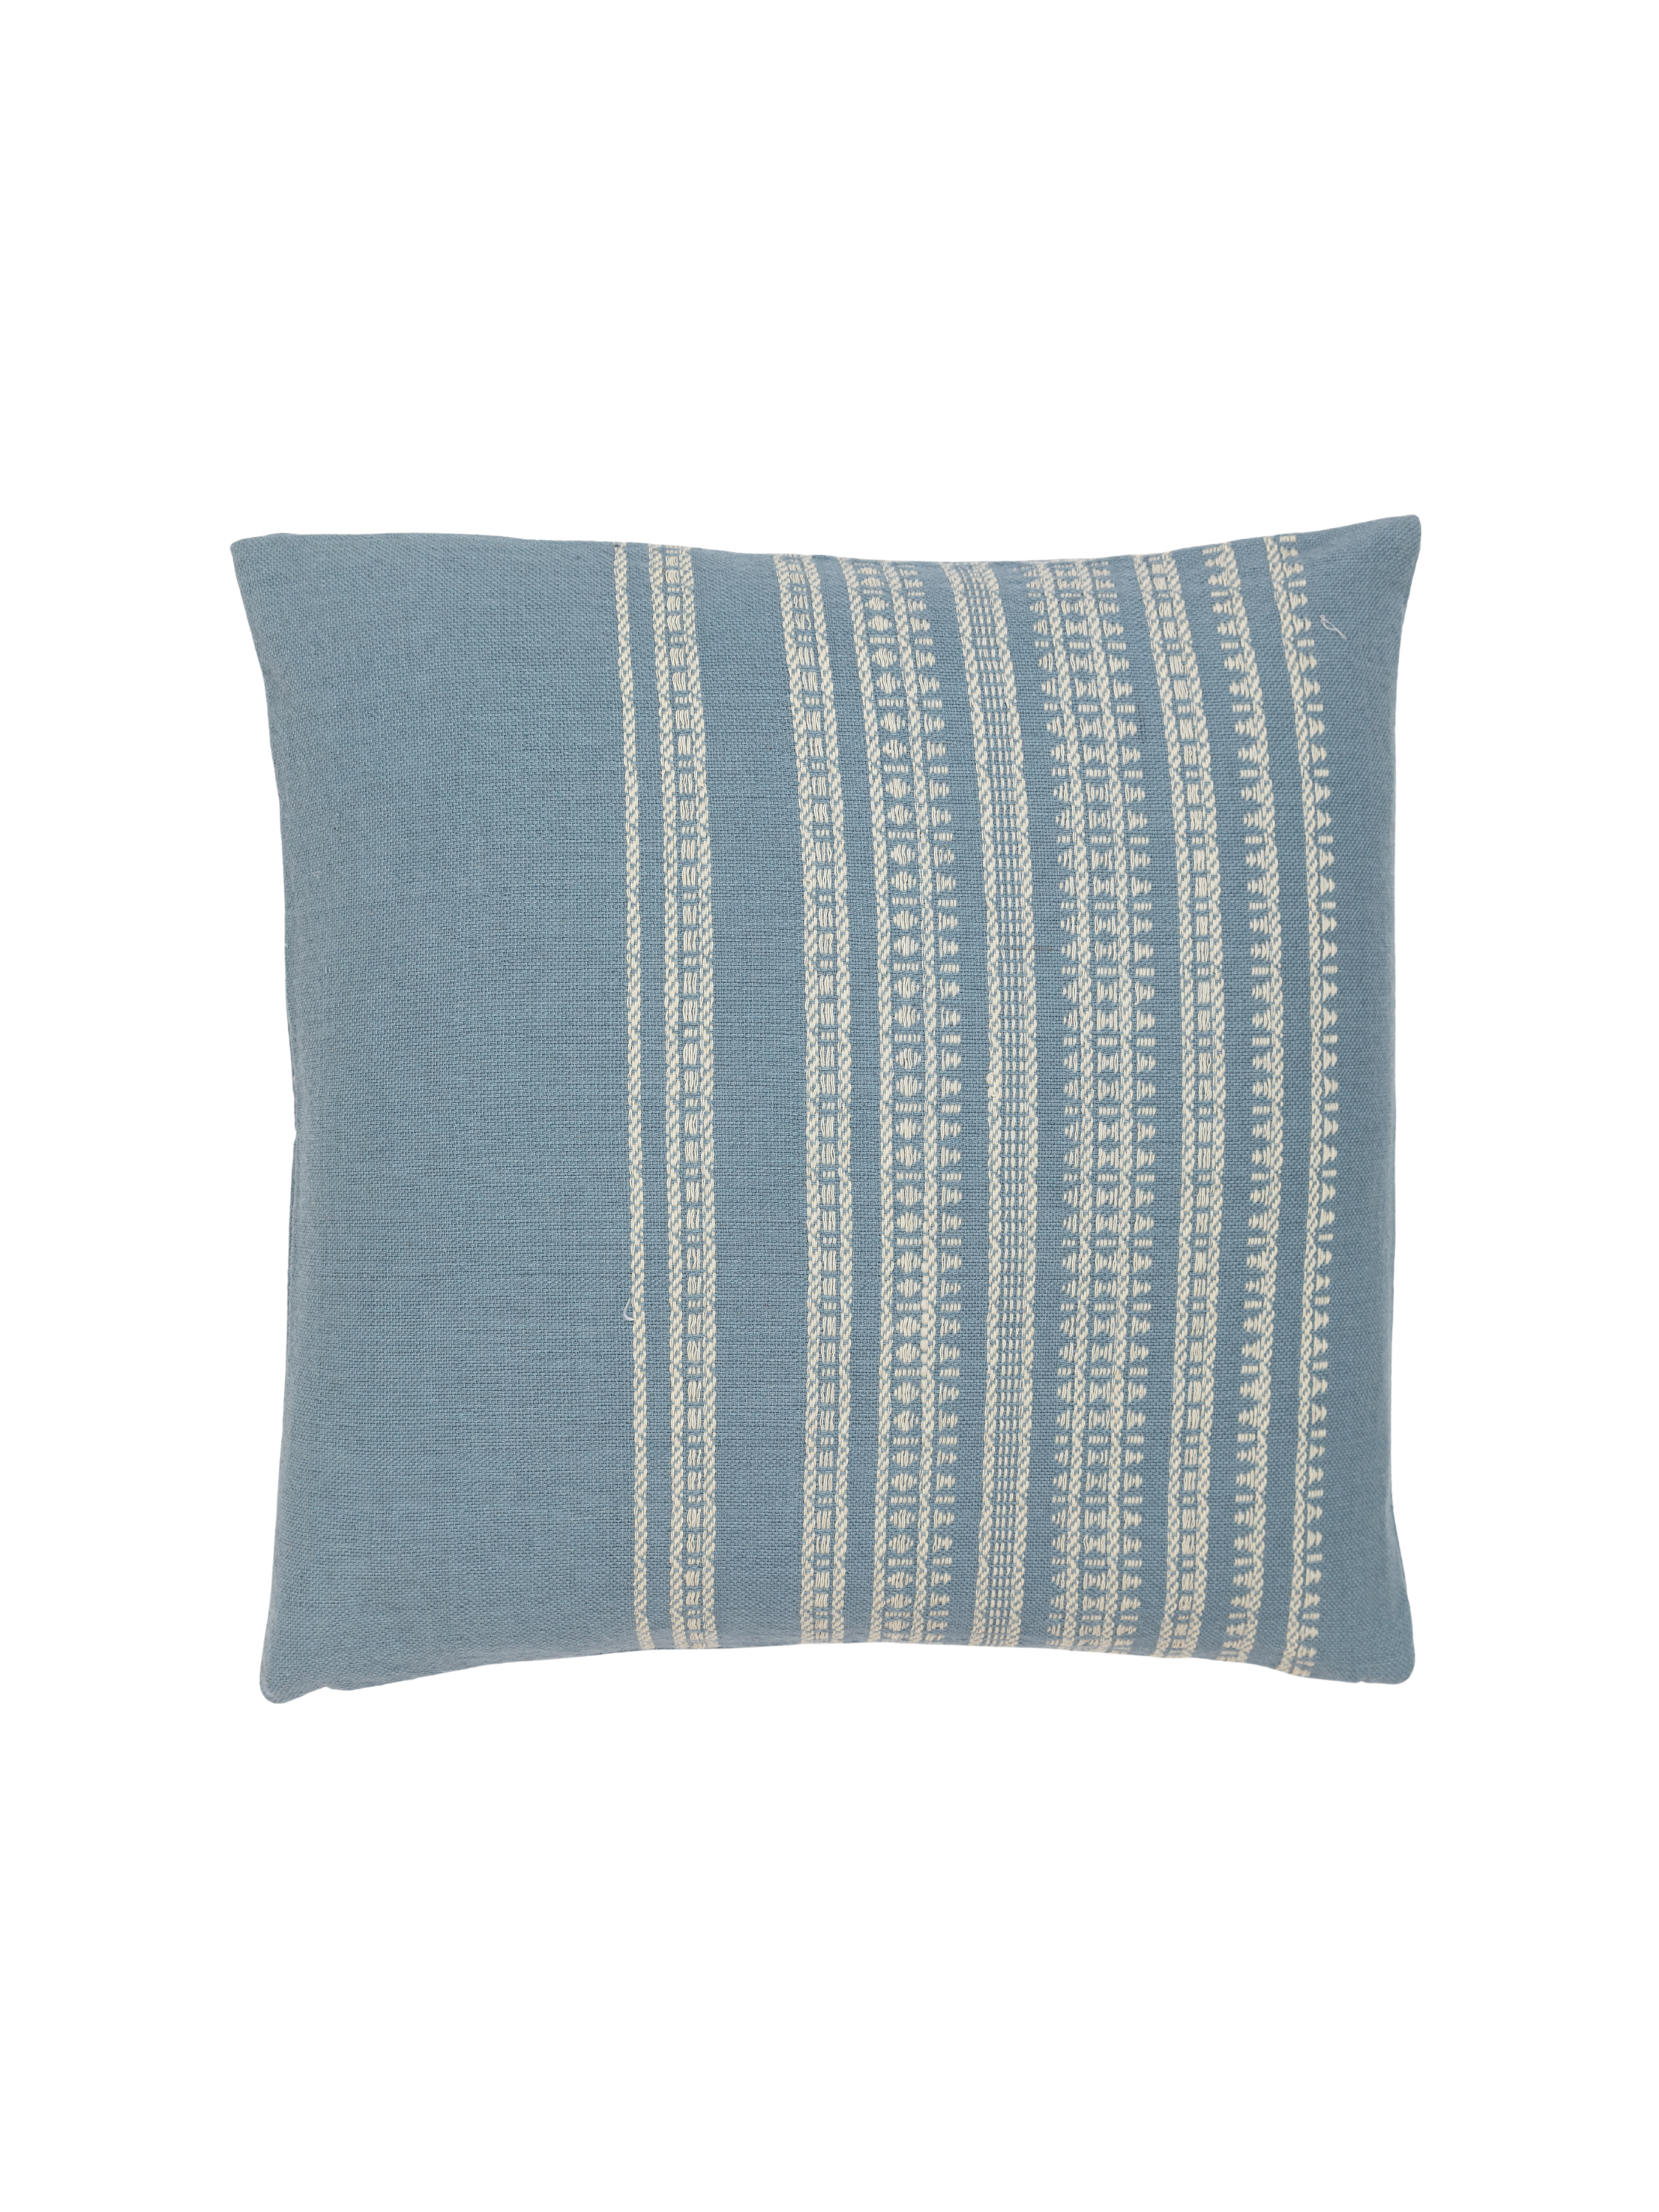 BK Cornflower Blue/Shell Handwoven Pillow Cover